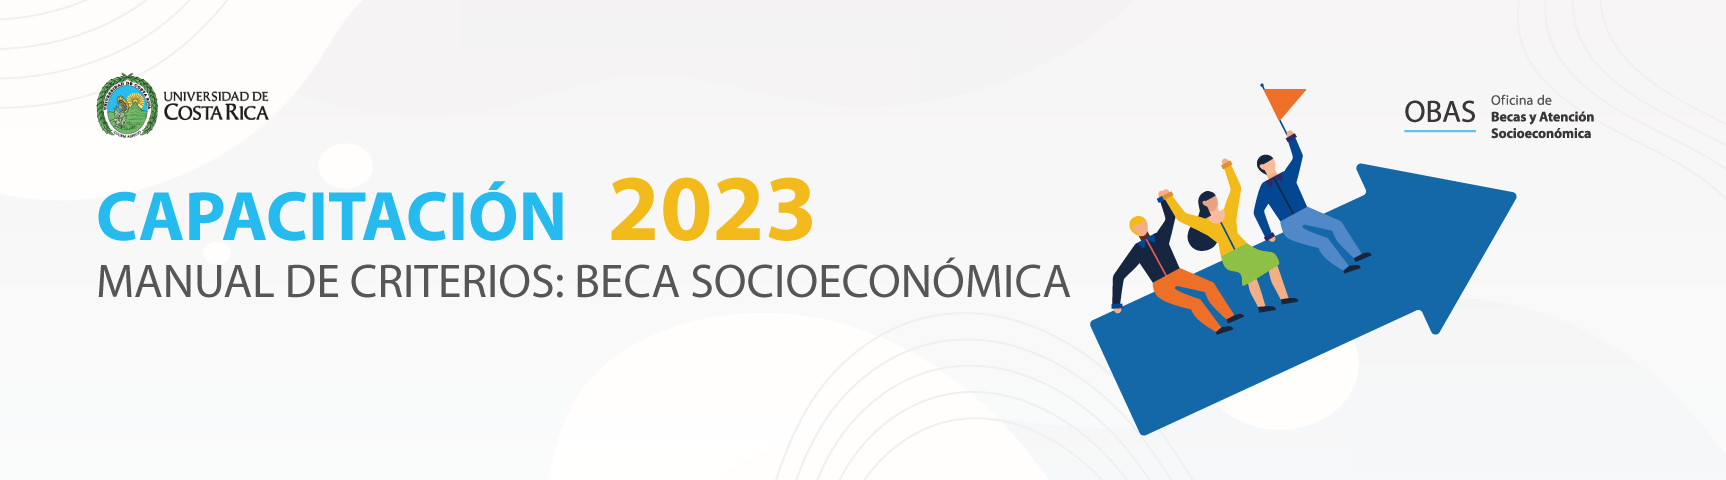 Capacitación de revisión beca socioeconómica y aplicación de criterios 2023